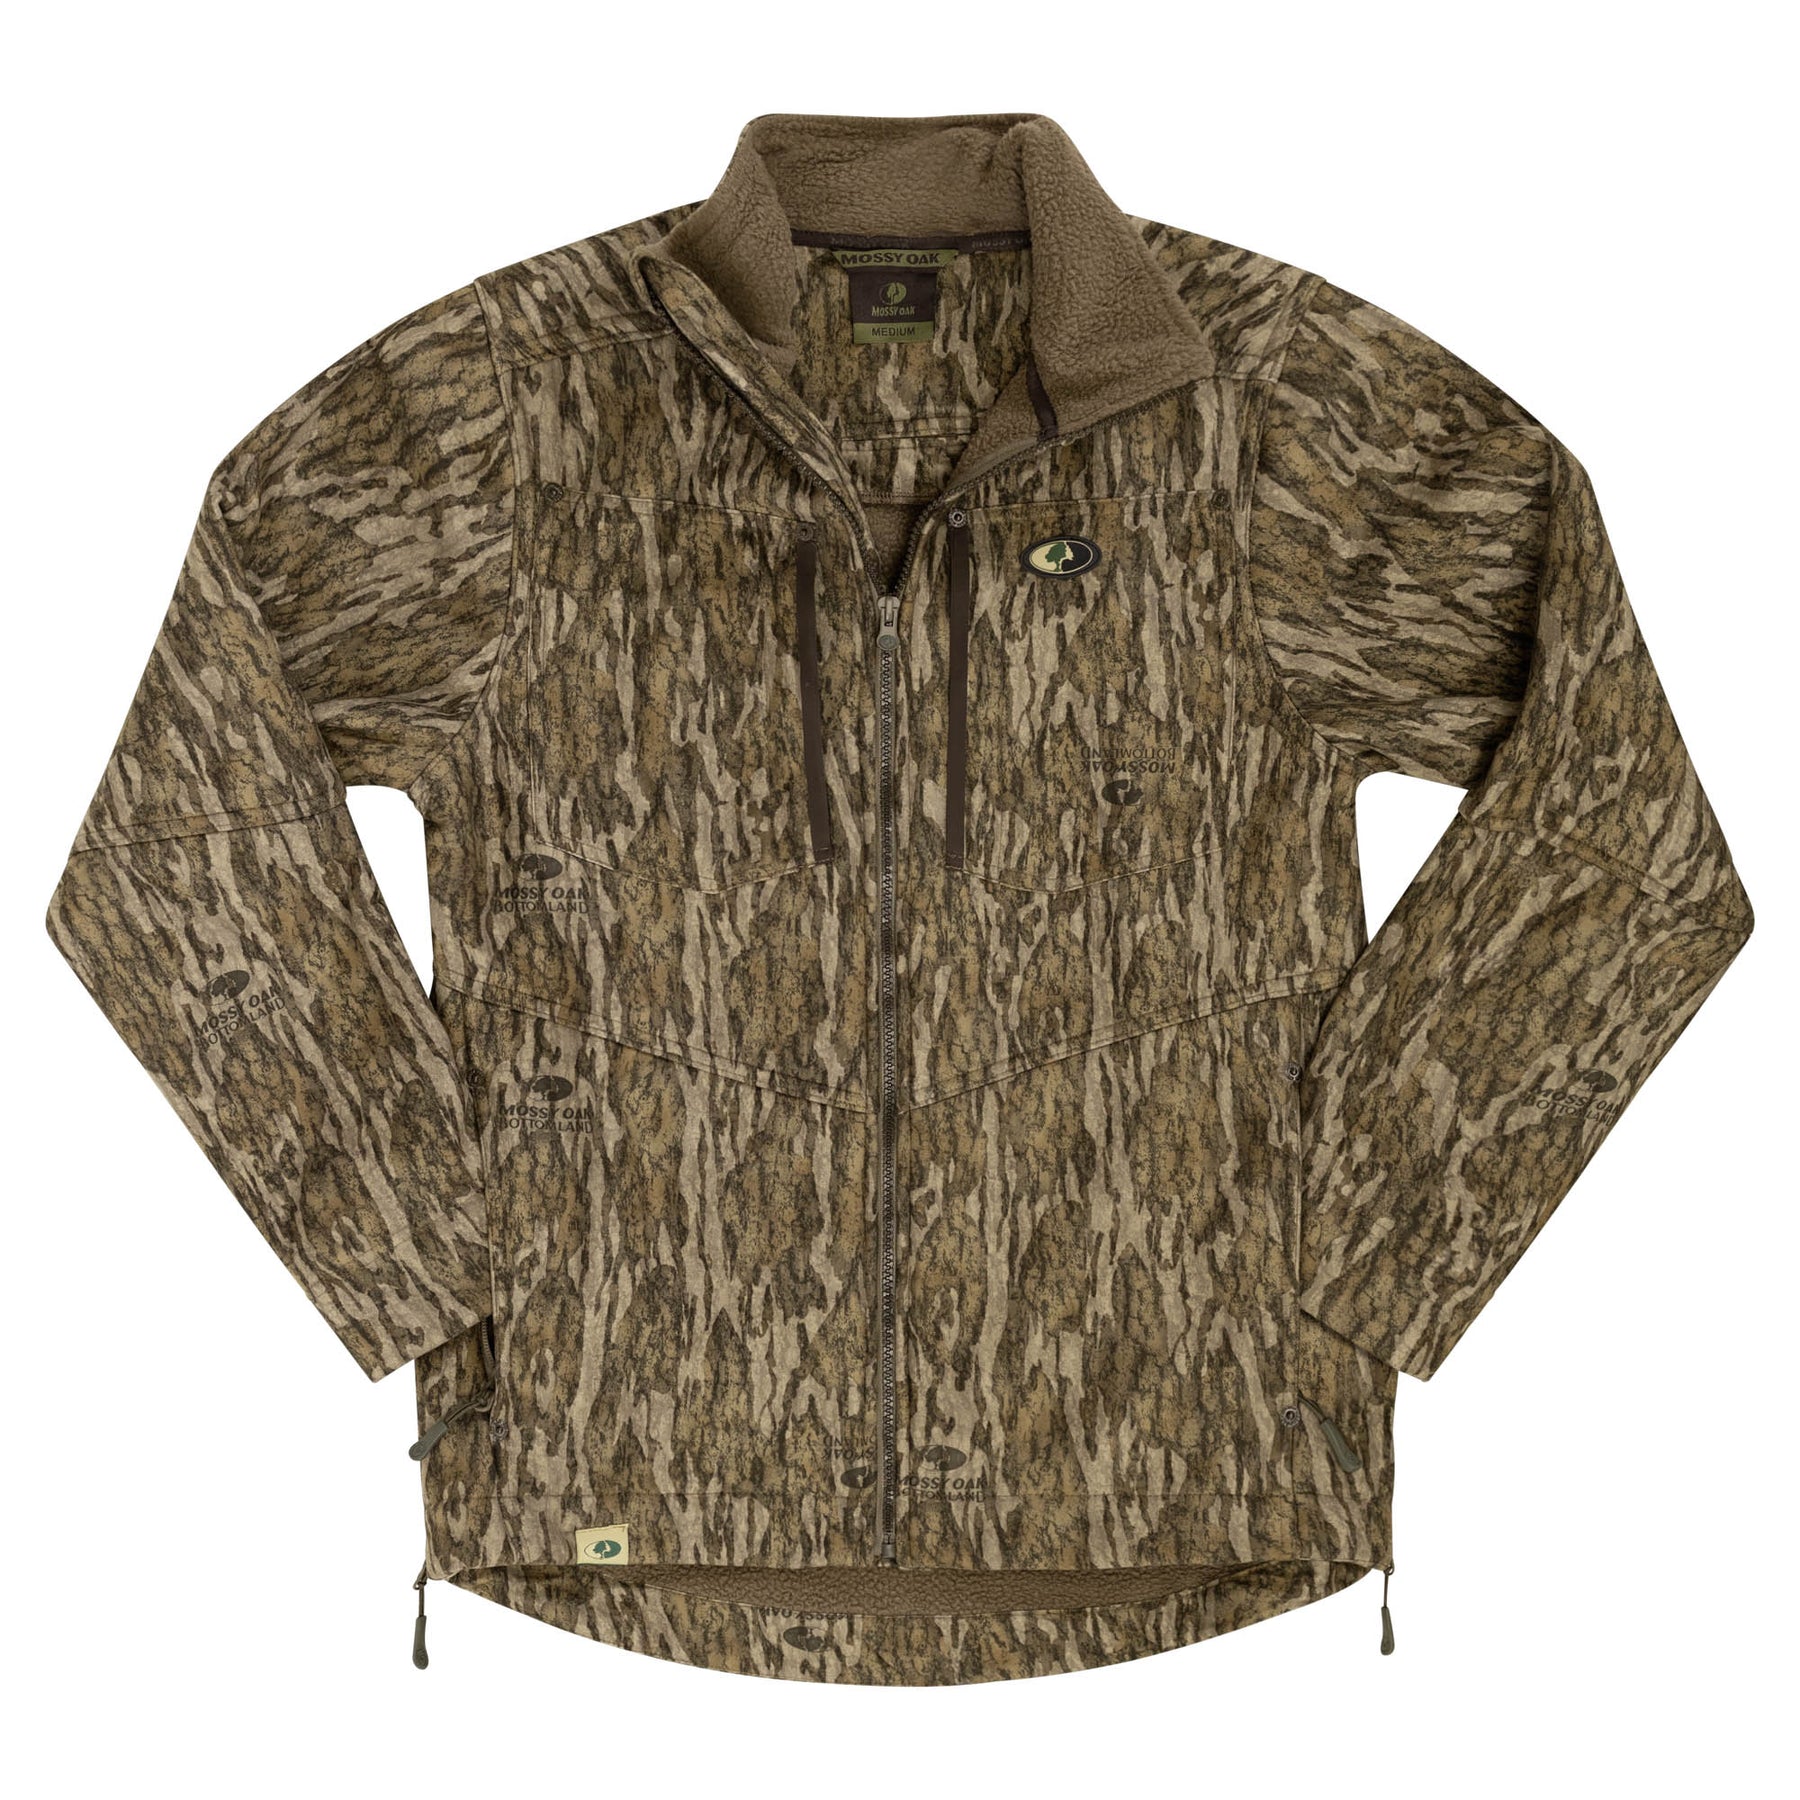 Mossy Oak Sherpa 2.0 Lined Jacket – The Mossy Oak Store